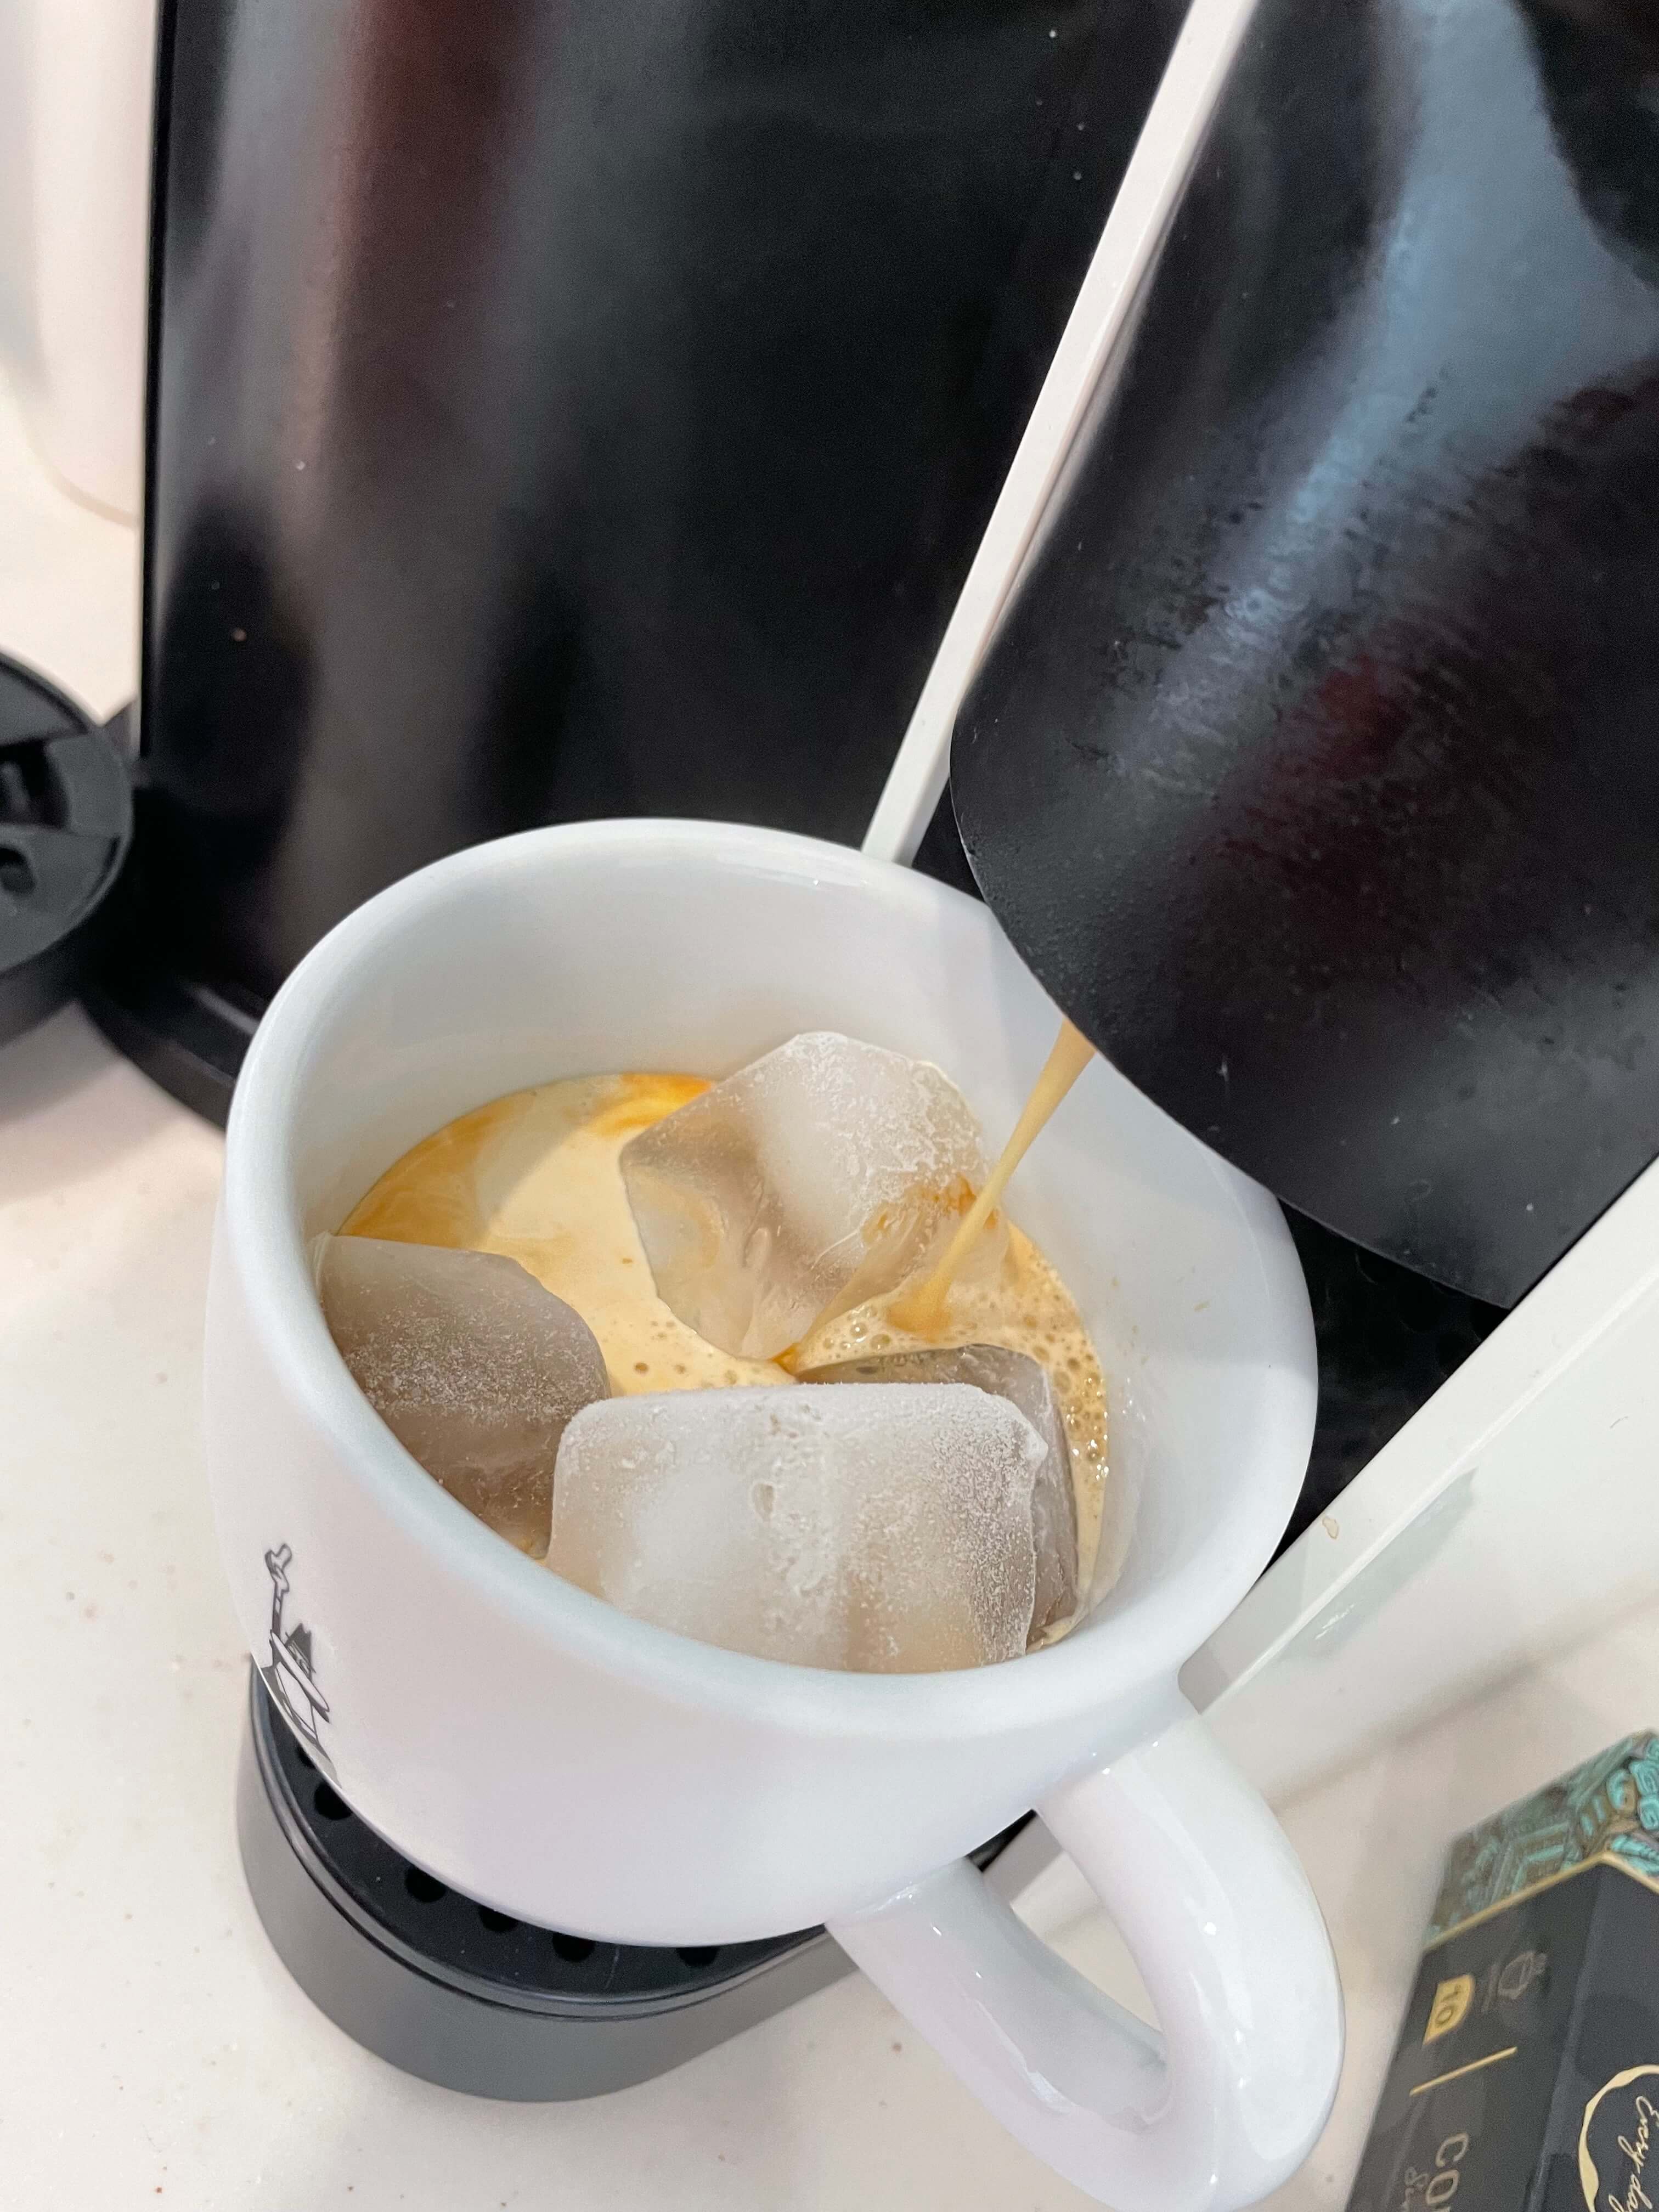 커피가 내려진 후 커피잔에 담겨져 있는 모습 아이스가 머그 컵안에 들어있는 모습. 풍부한 크레마가 보인다.